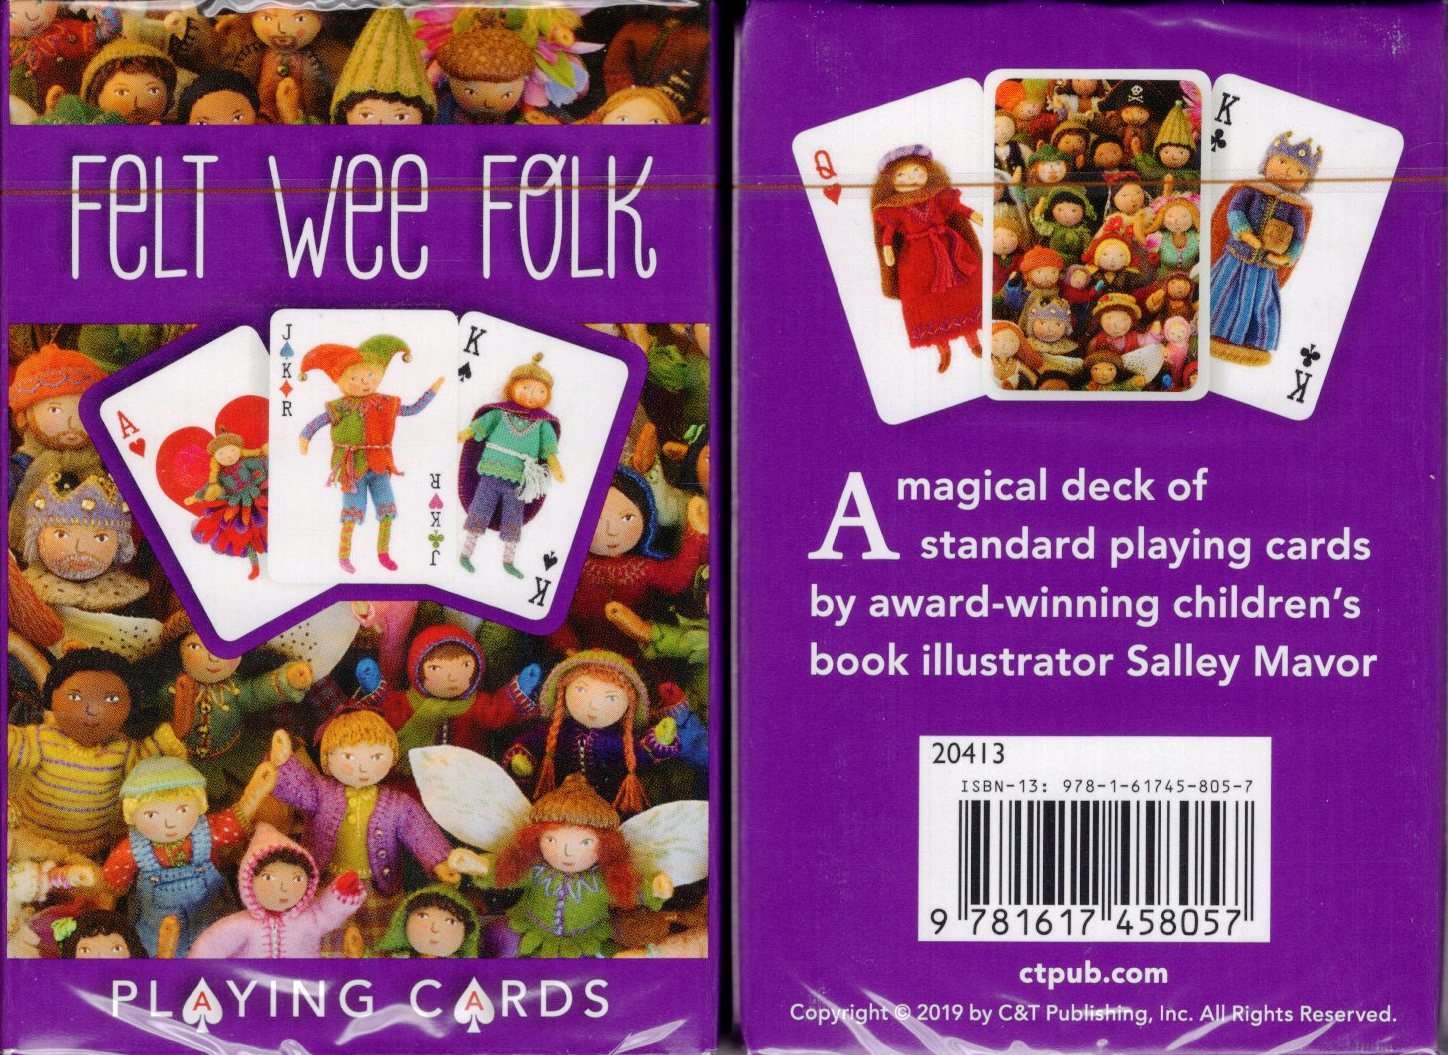 PlayingCardDecks.com-Felt Wee Folk Playing Cards